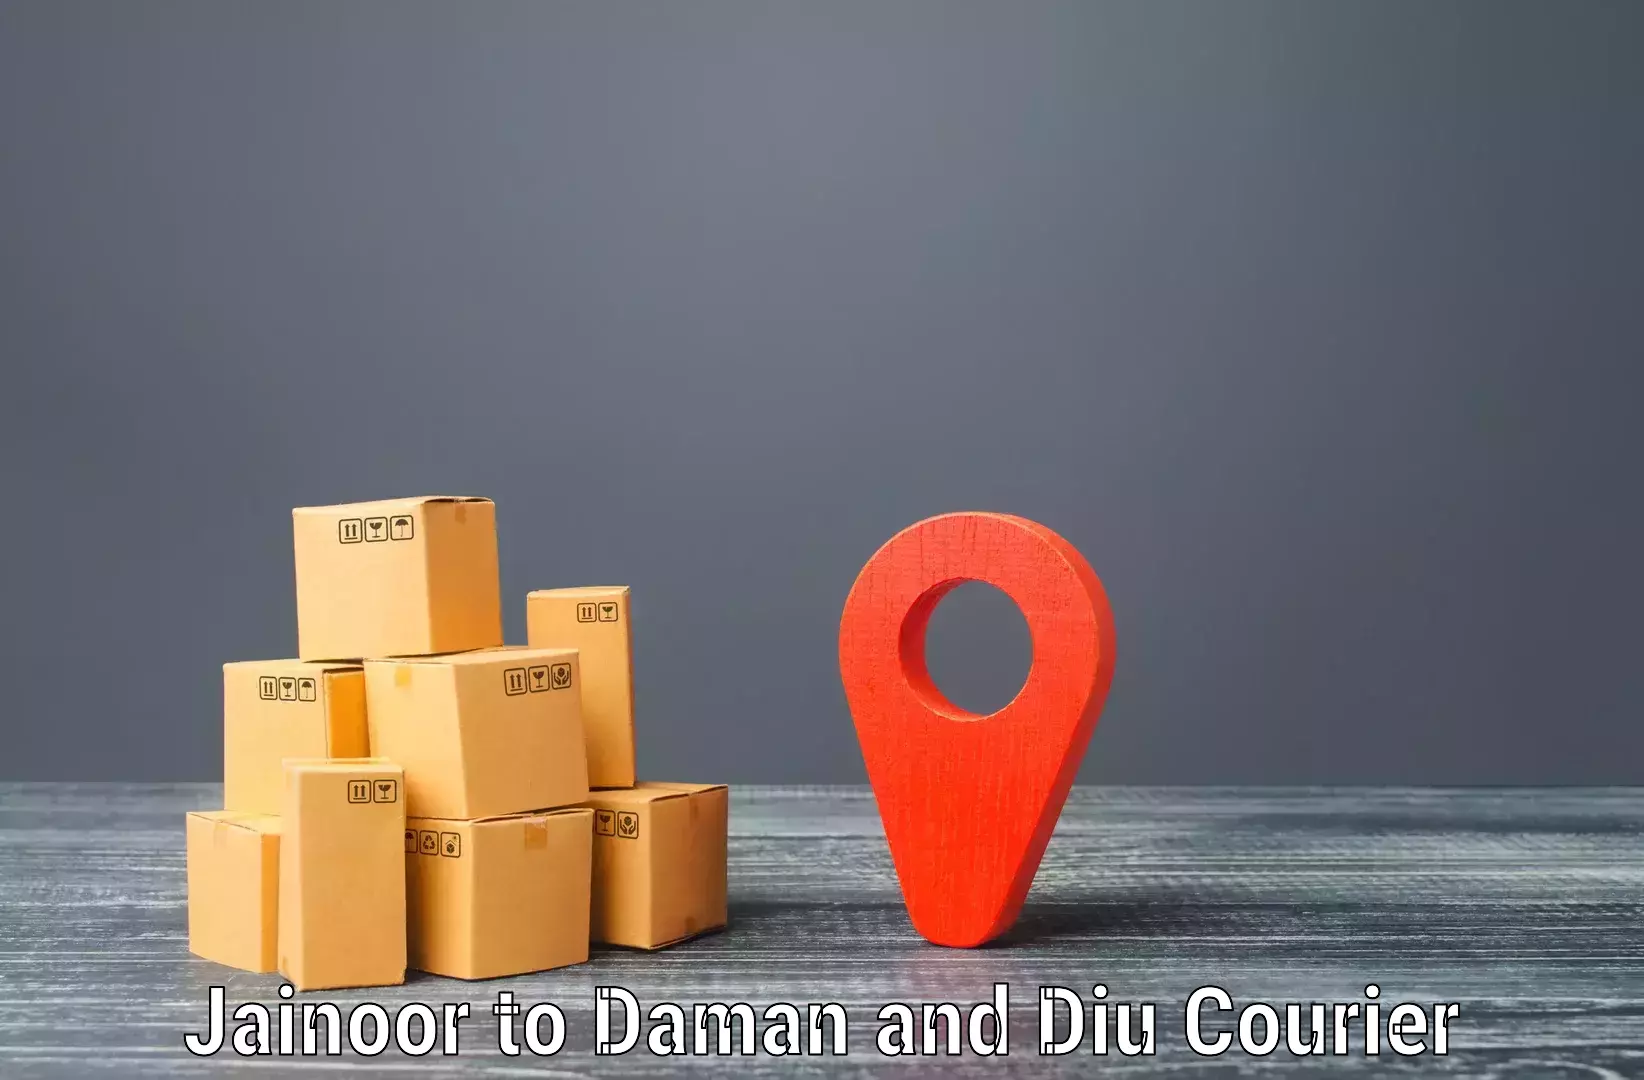 Heavy parcel delivery Jainoor to Diu